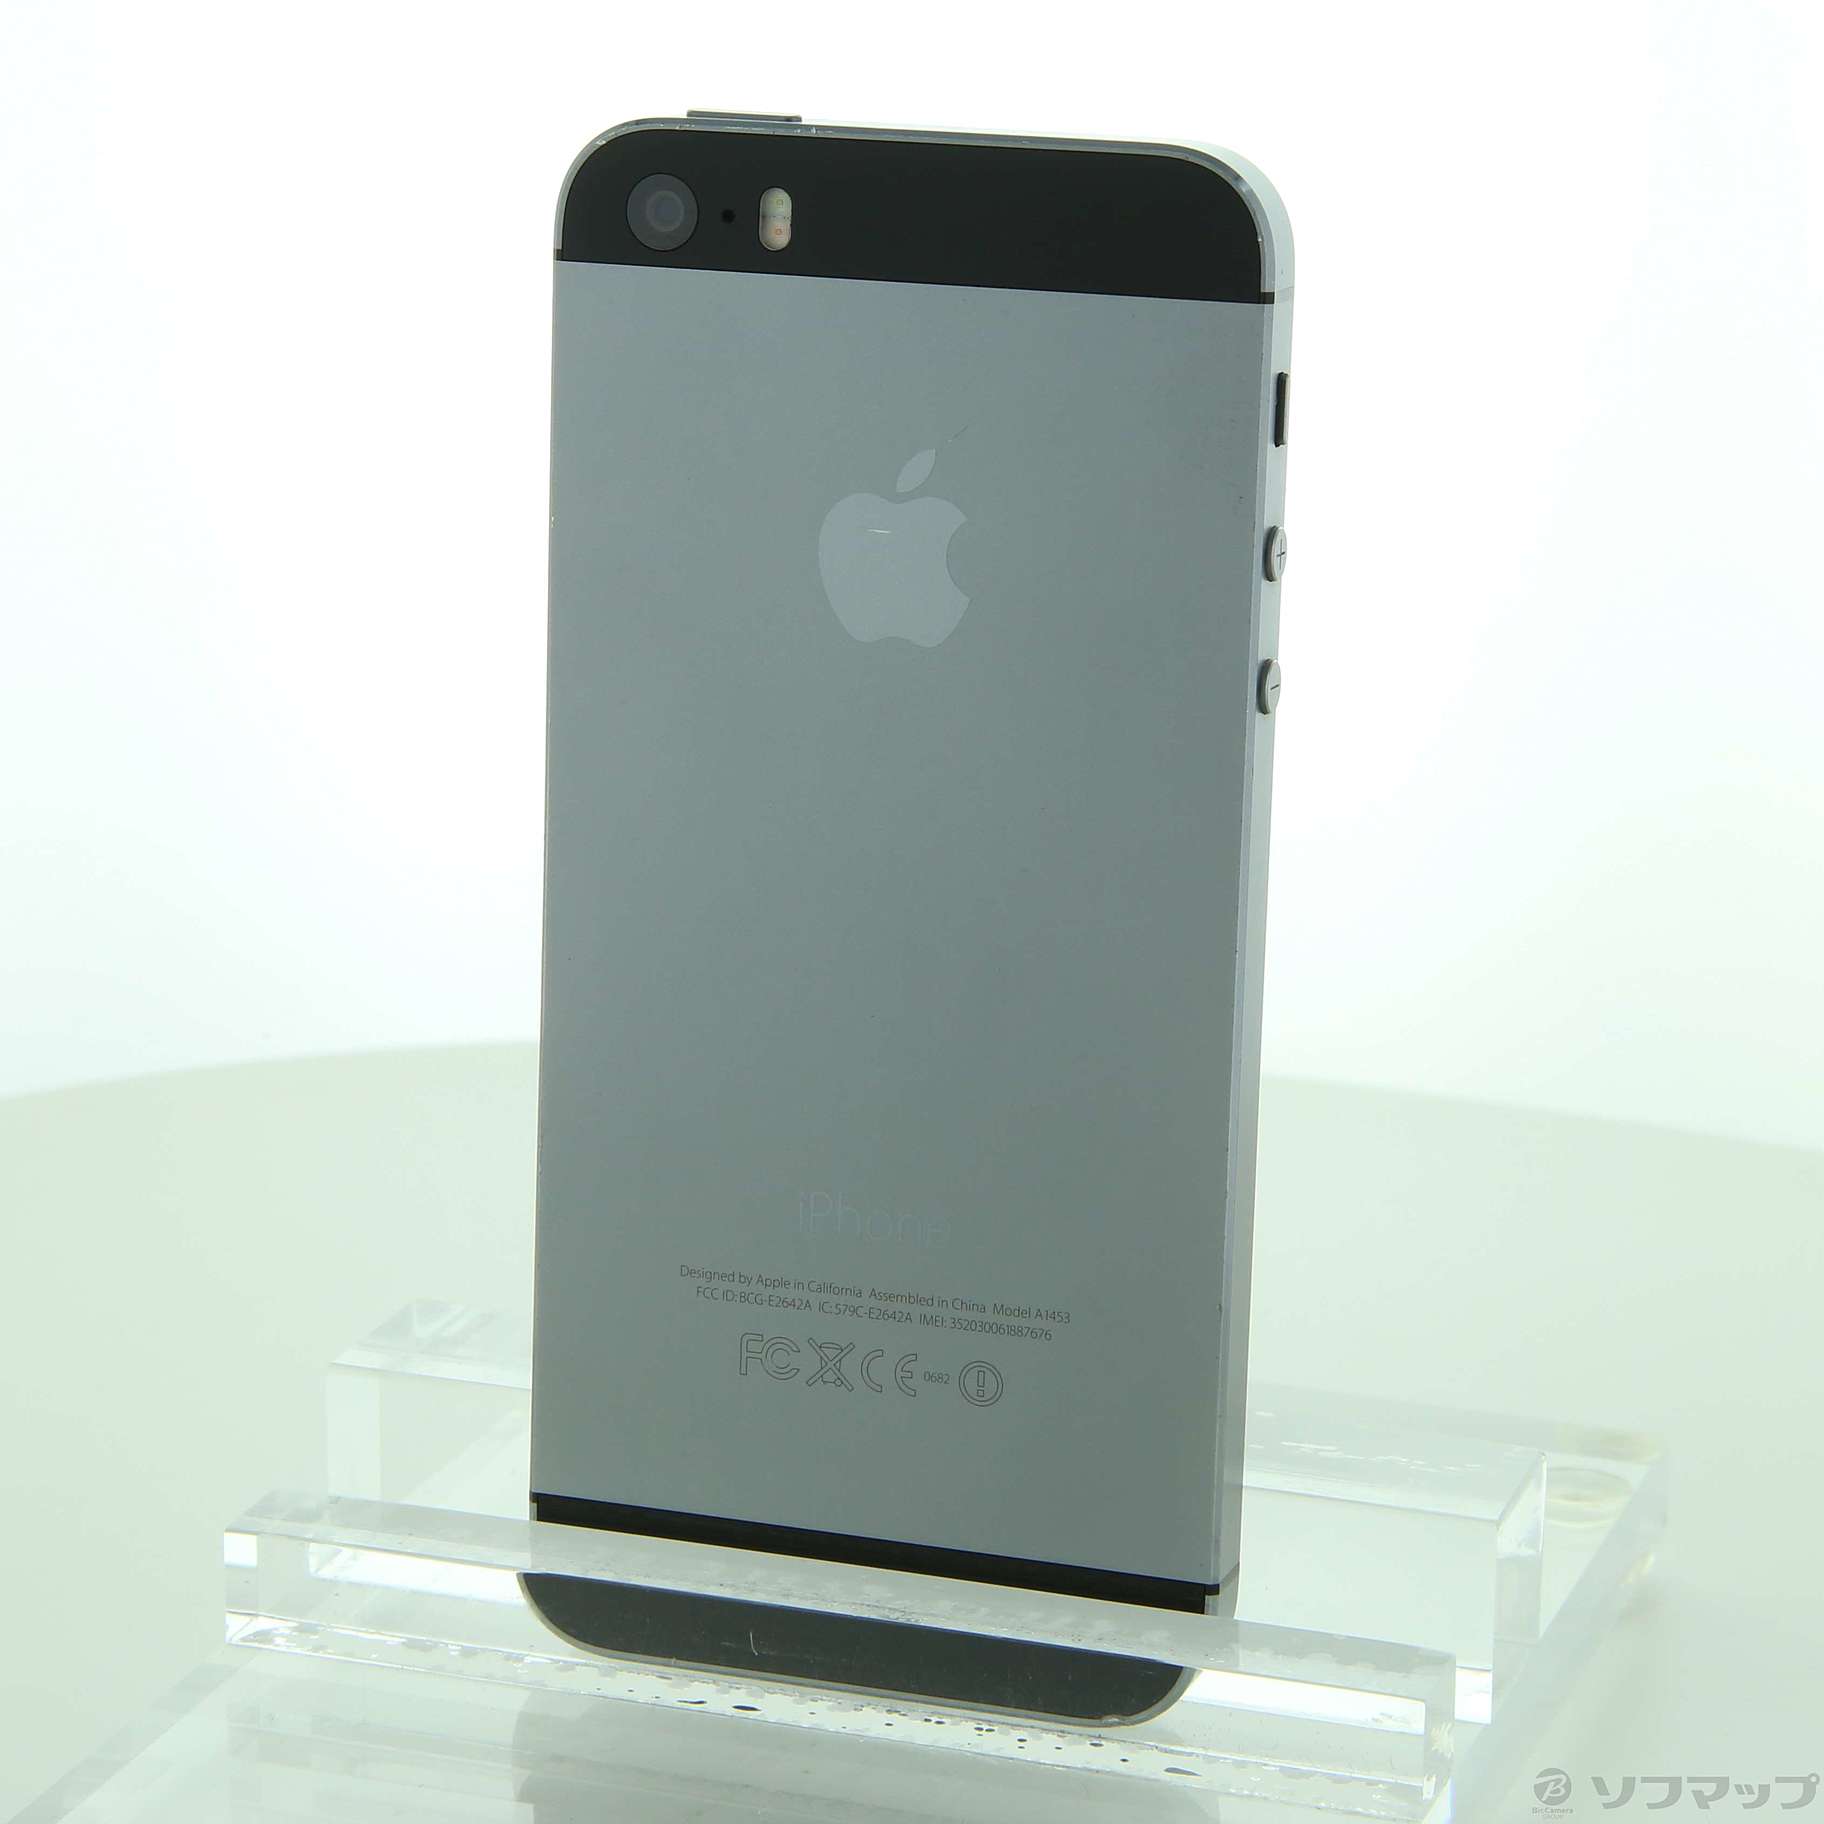 iPhone 5s Space Gray 16 GB docomo中古